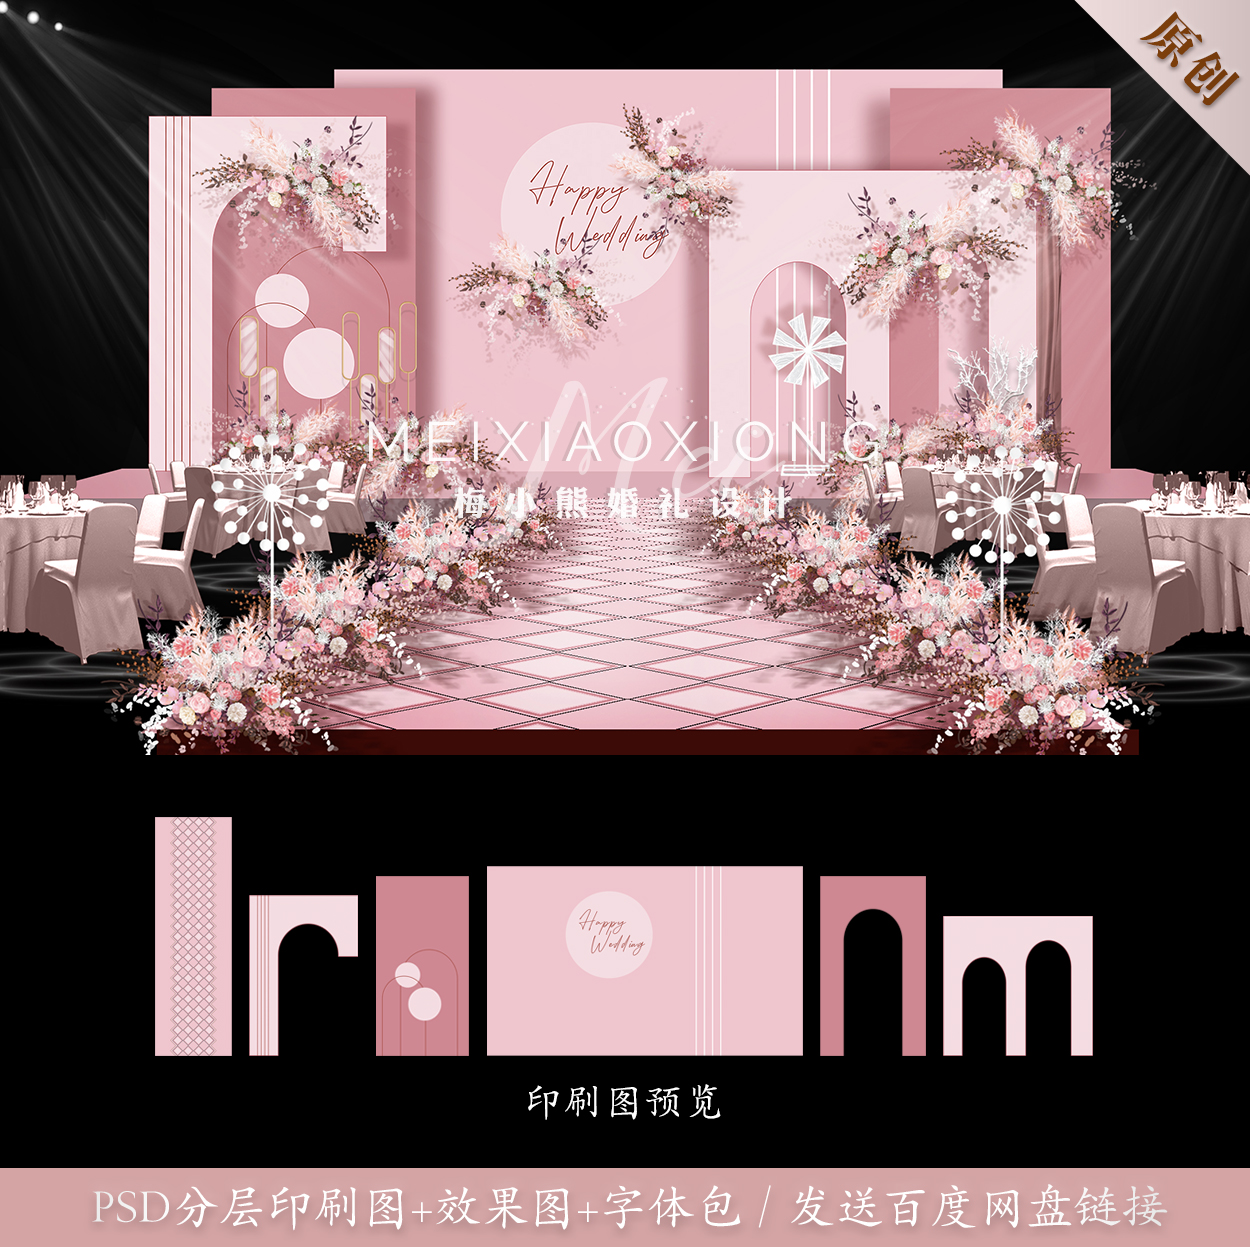 粉色梦幻公主风格婚礼背景墙设计效果图 婚庆舞台布置PSD素材模板